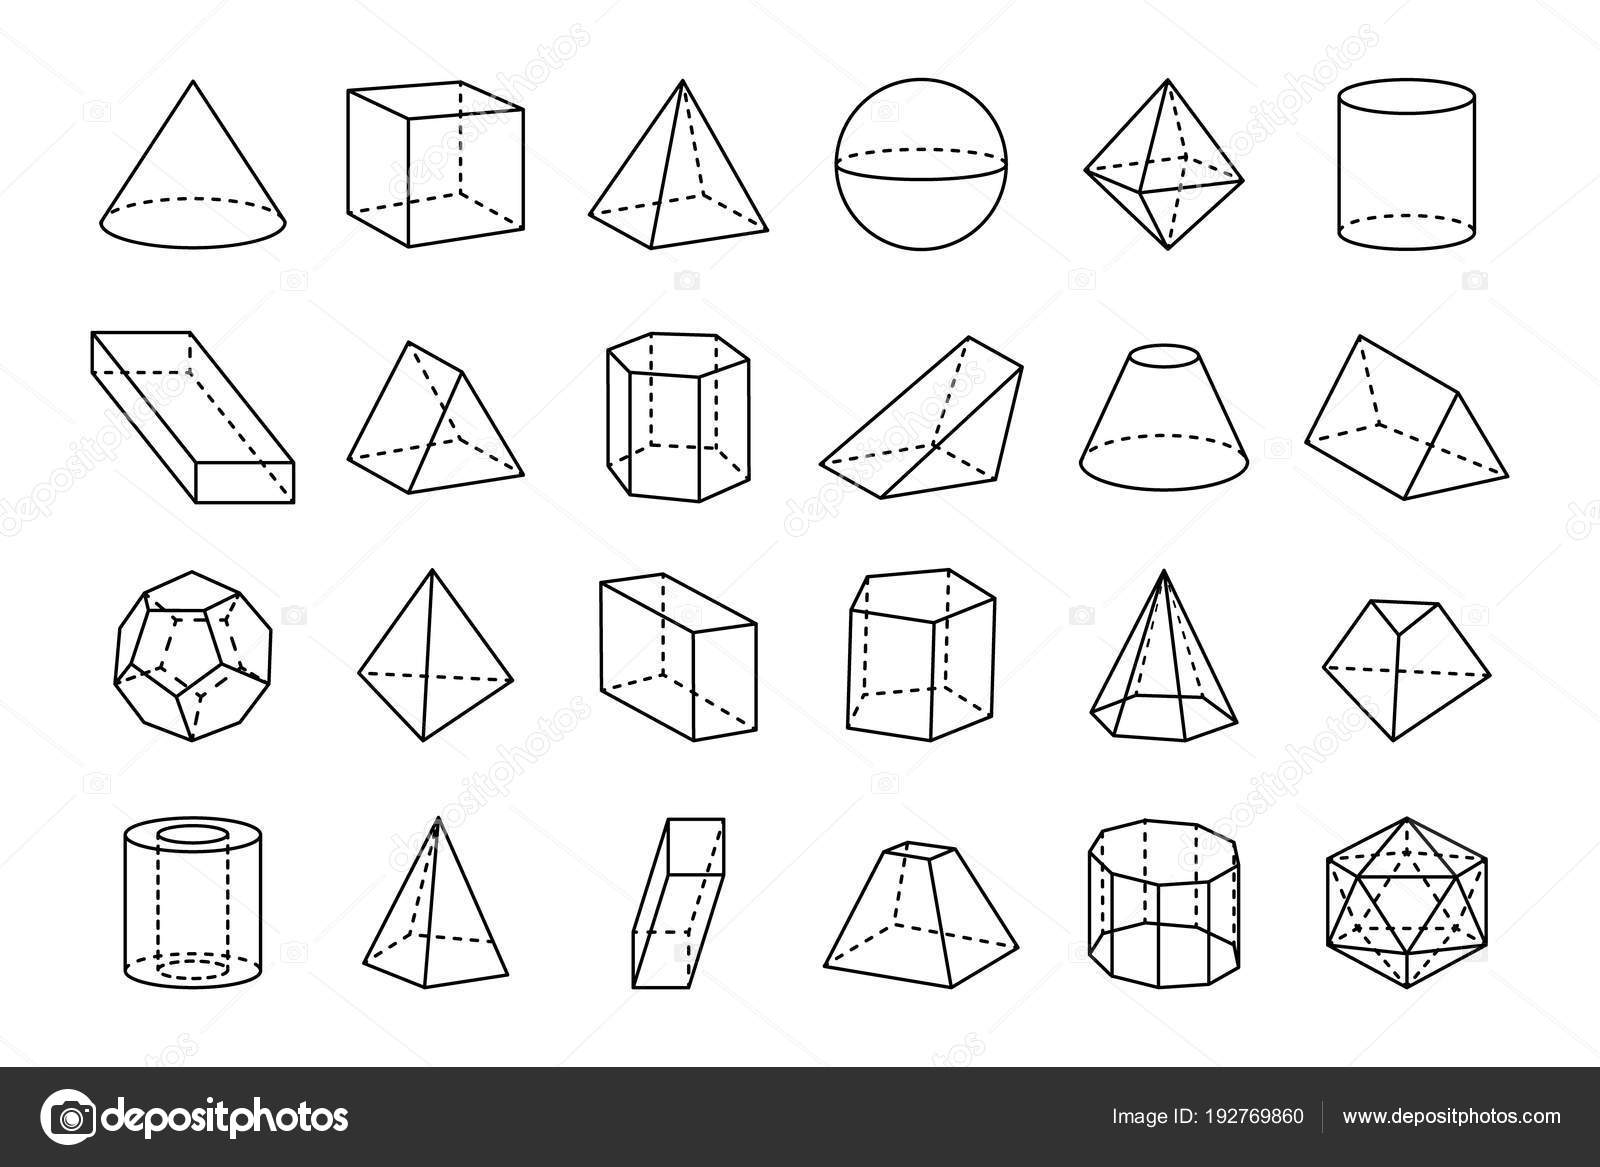 ᐈ Nombre De Figuras Geometricas Imagenes De Stock Vectores